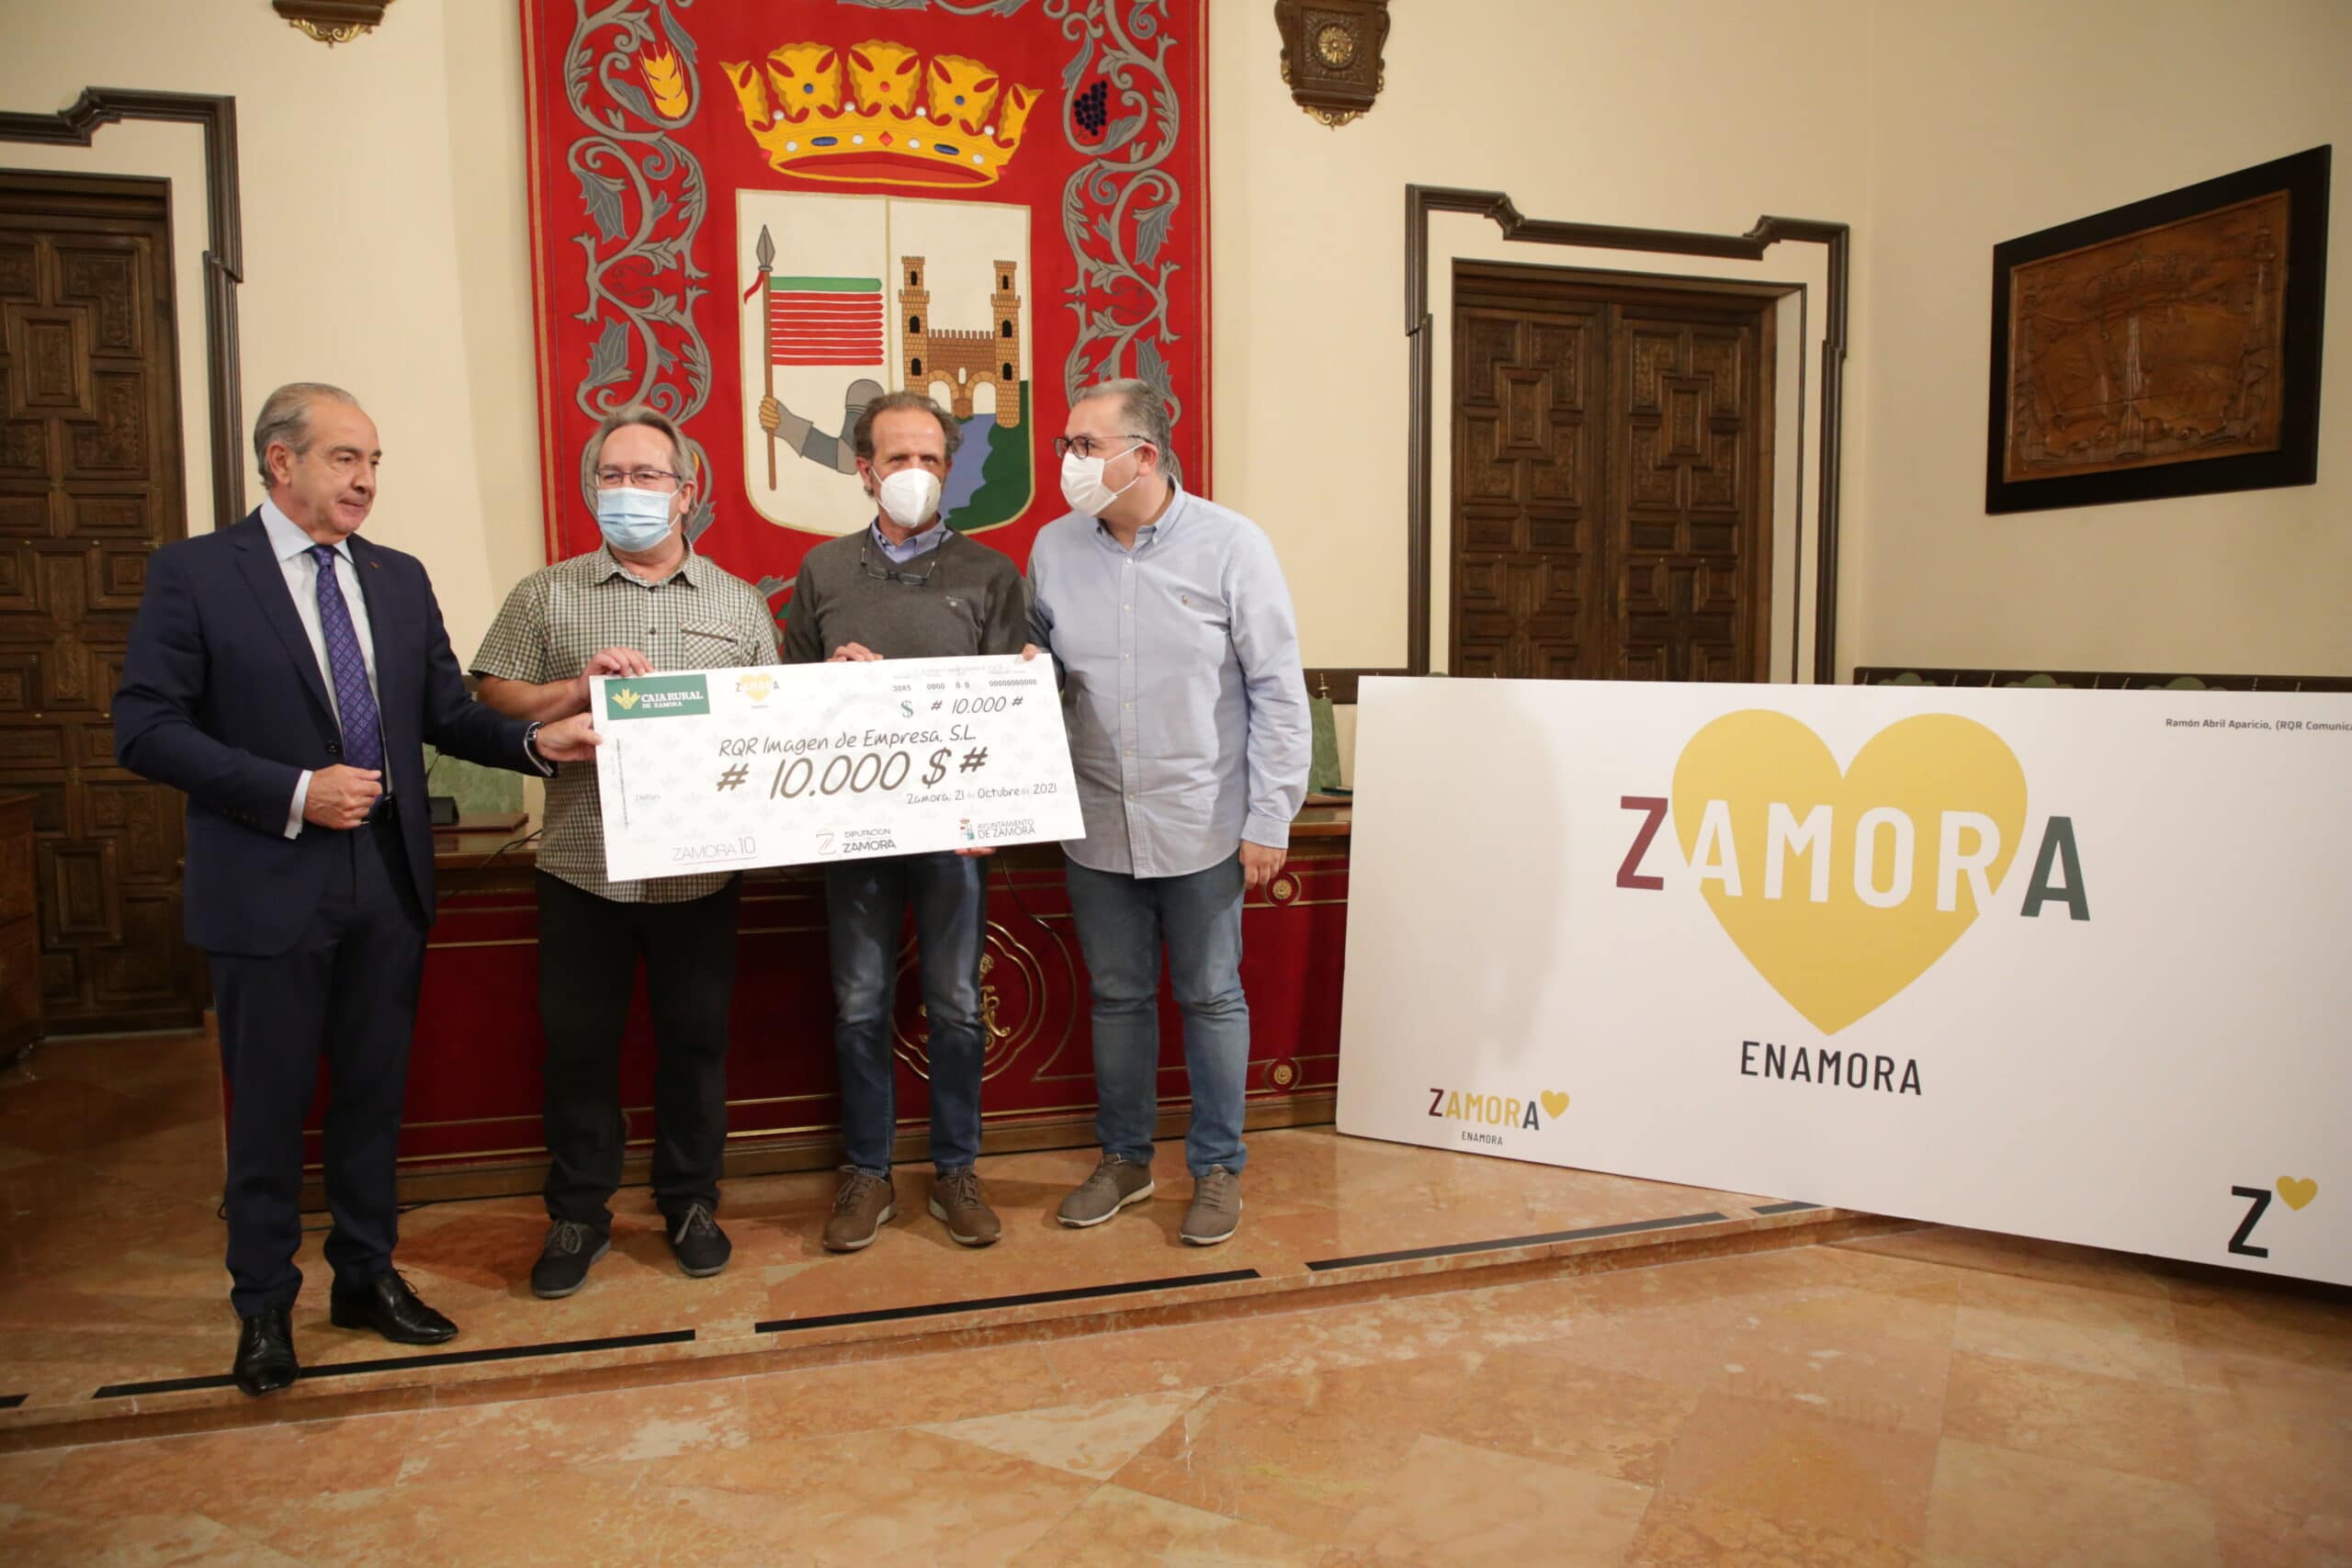 Zamora10 defiende la marca ‘Zamora Enamora’ frente a las críticas del Ayuntamiento